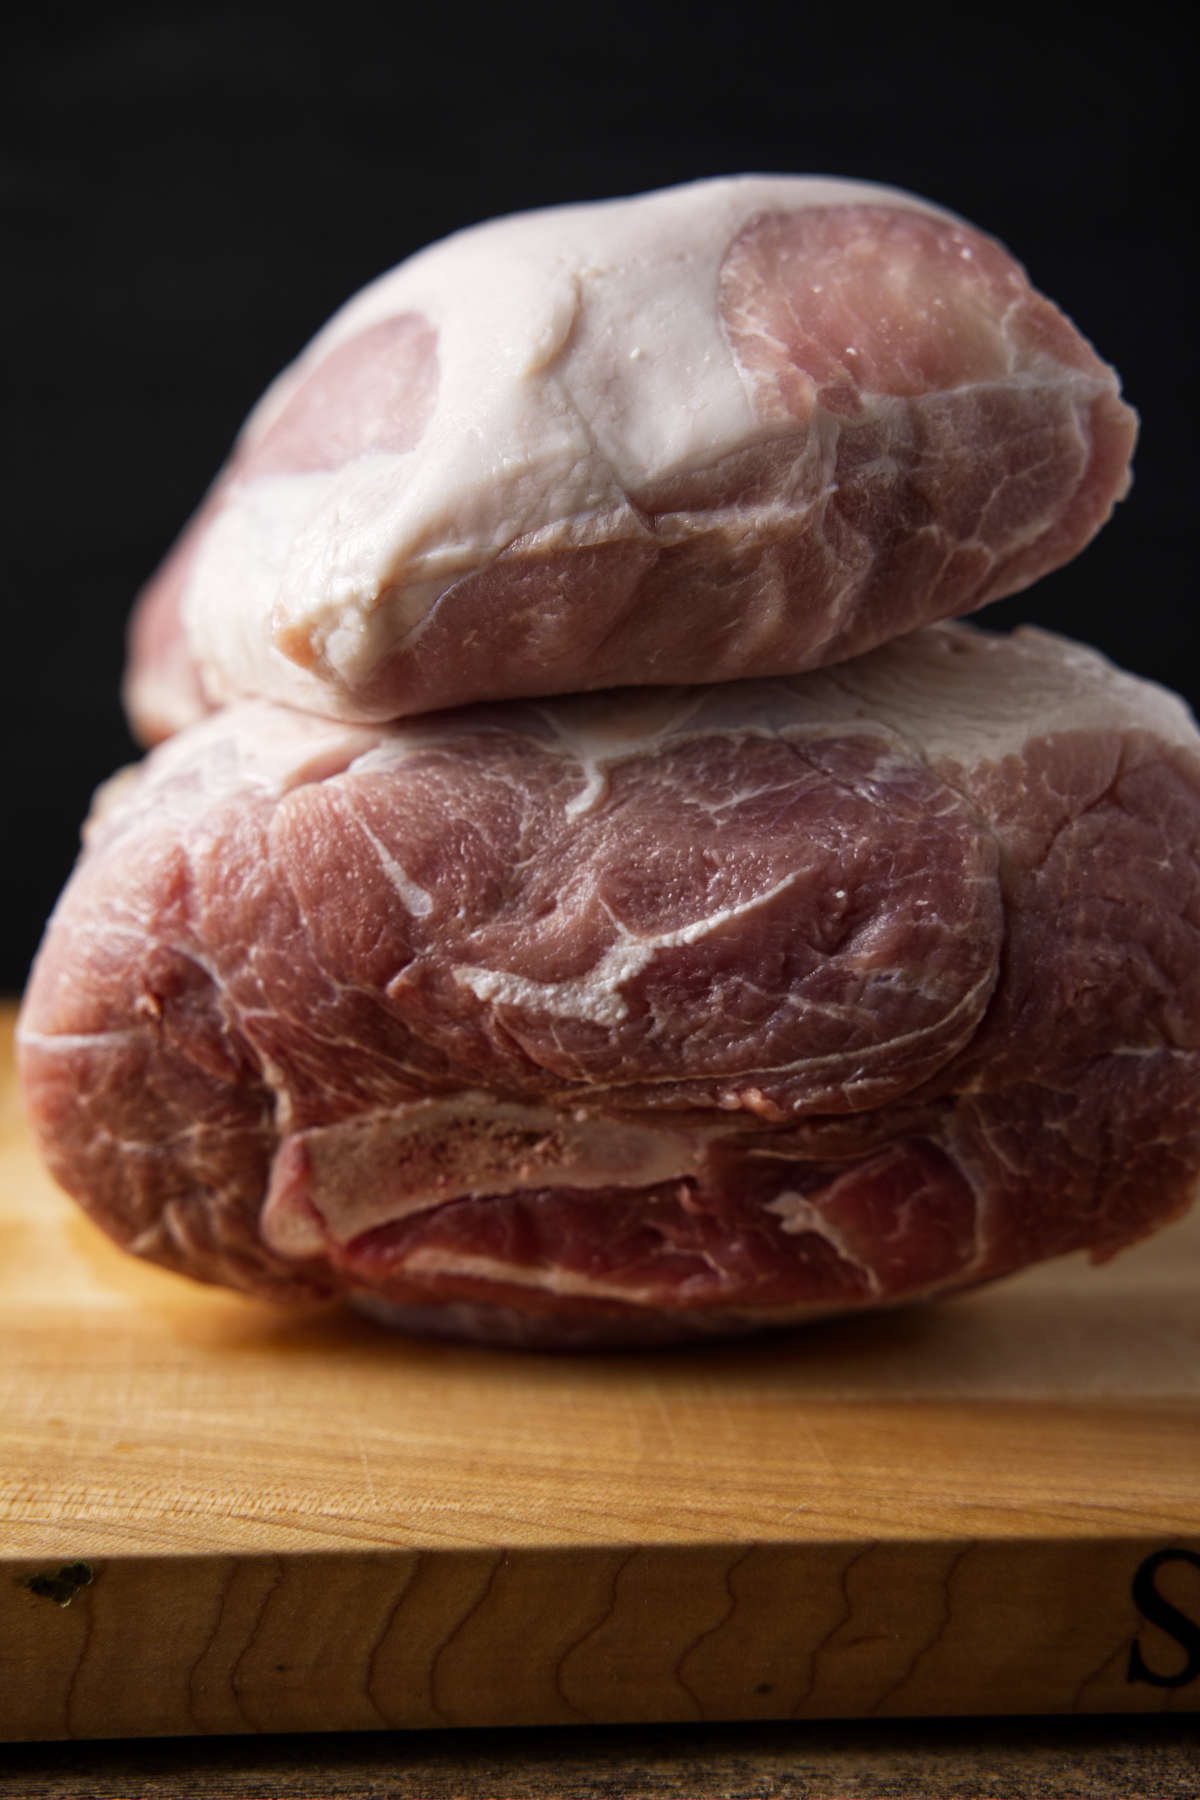 Pork loin on top of a pork shoulder sitting on a butcher block.